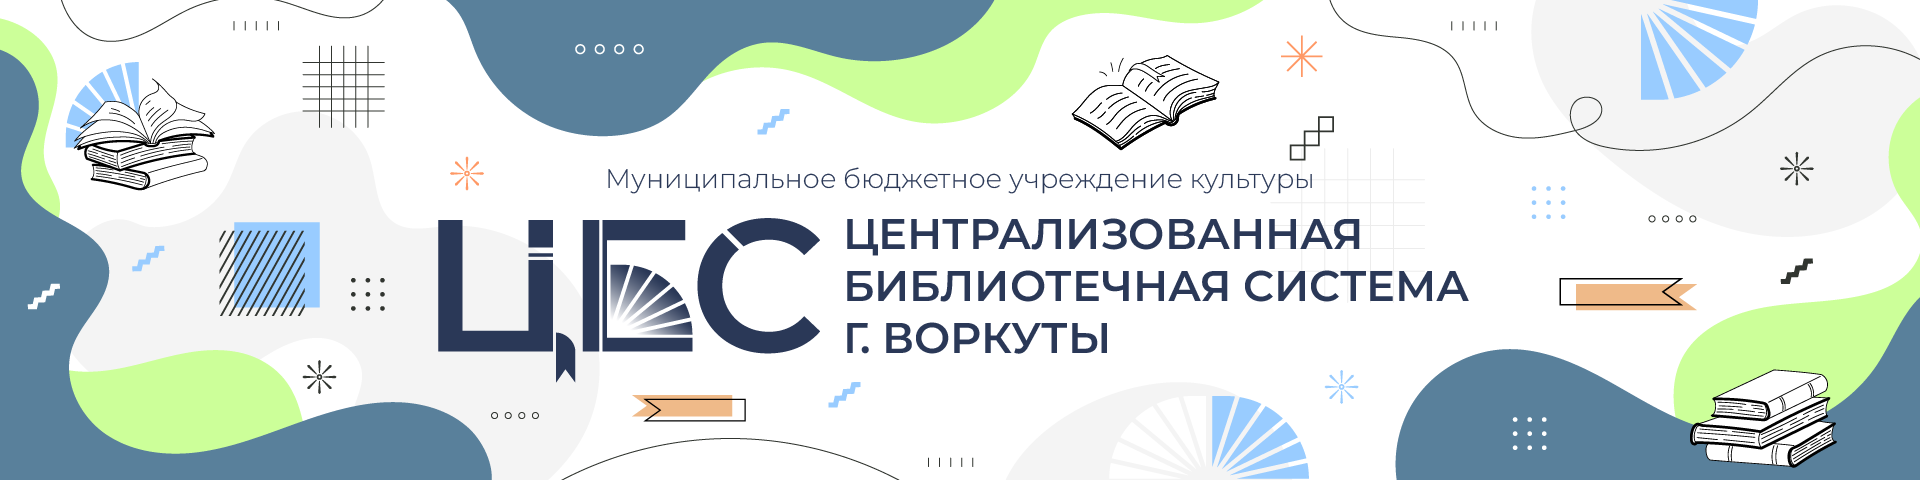 Централизованная библиотечная система города Воркуты